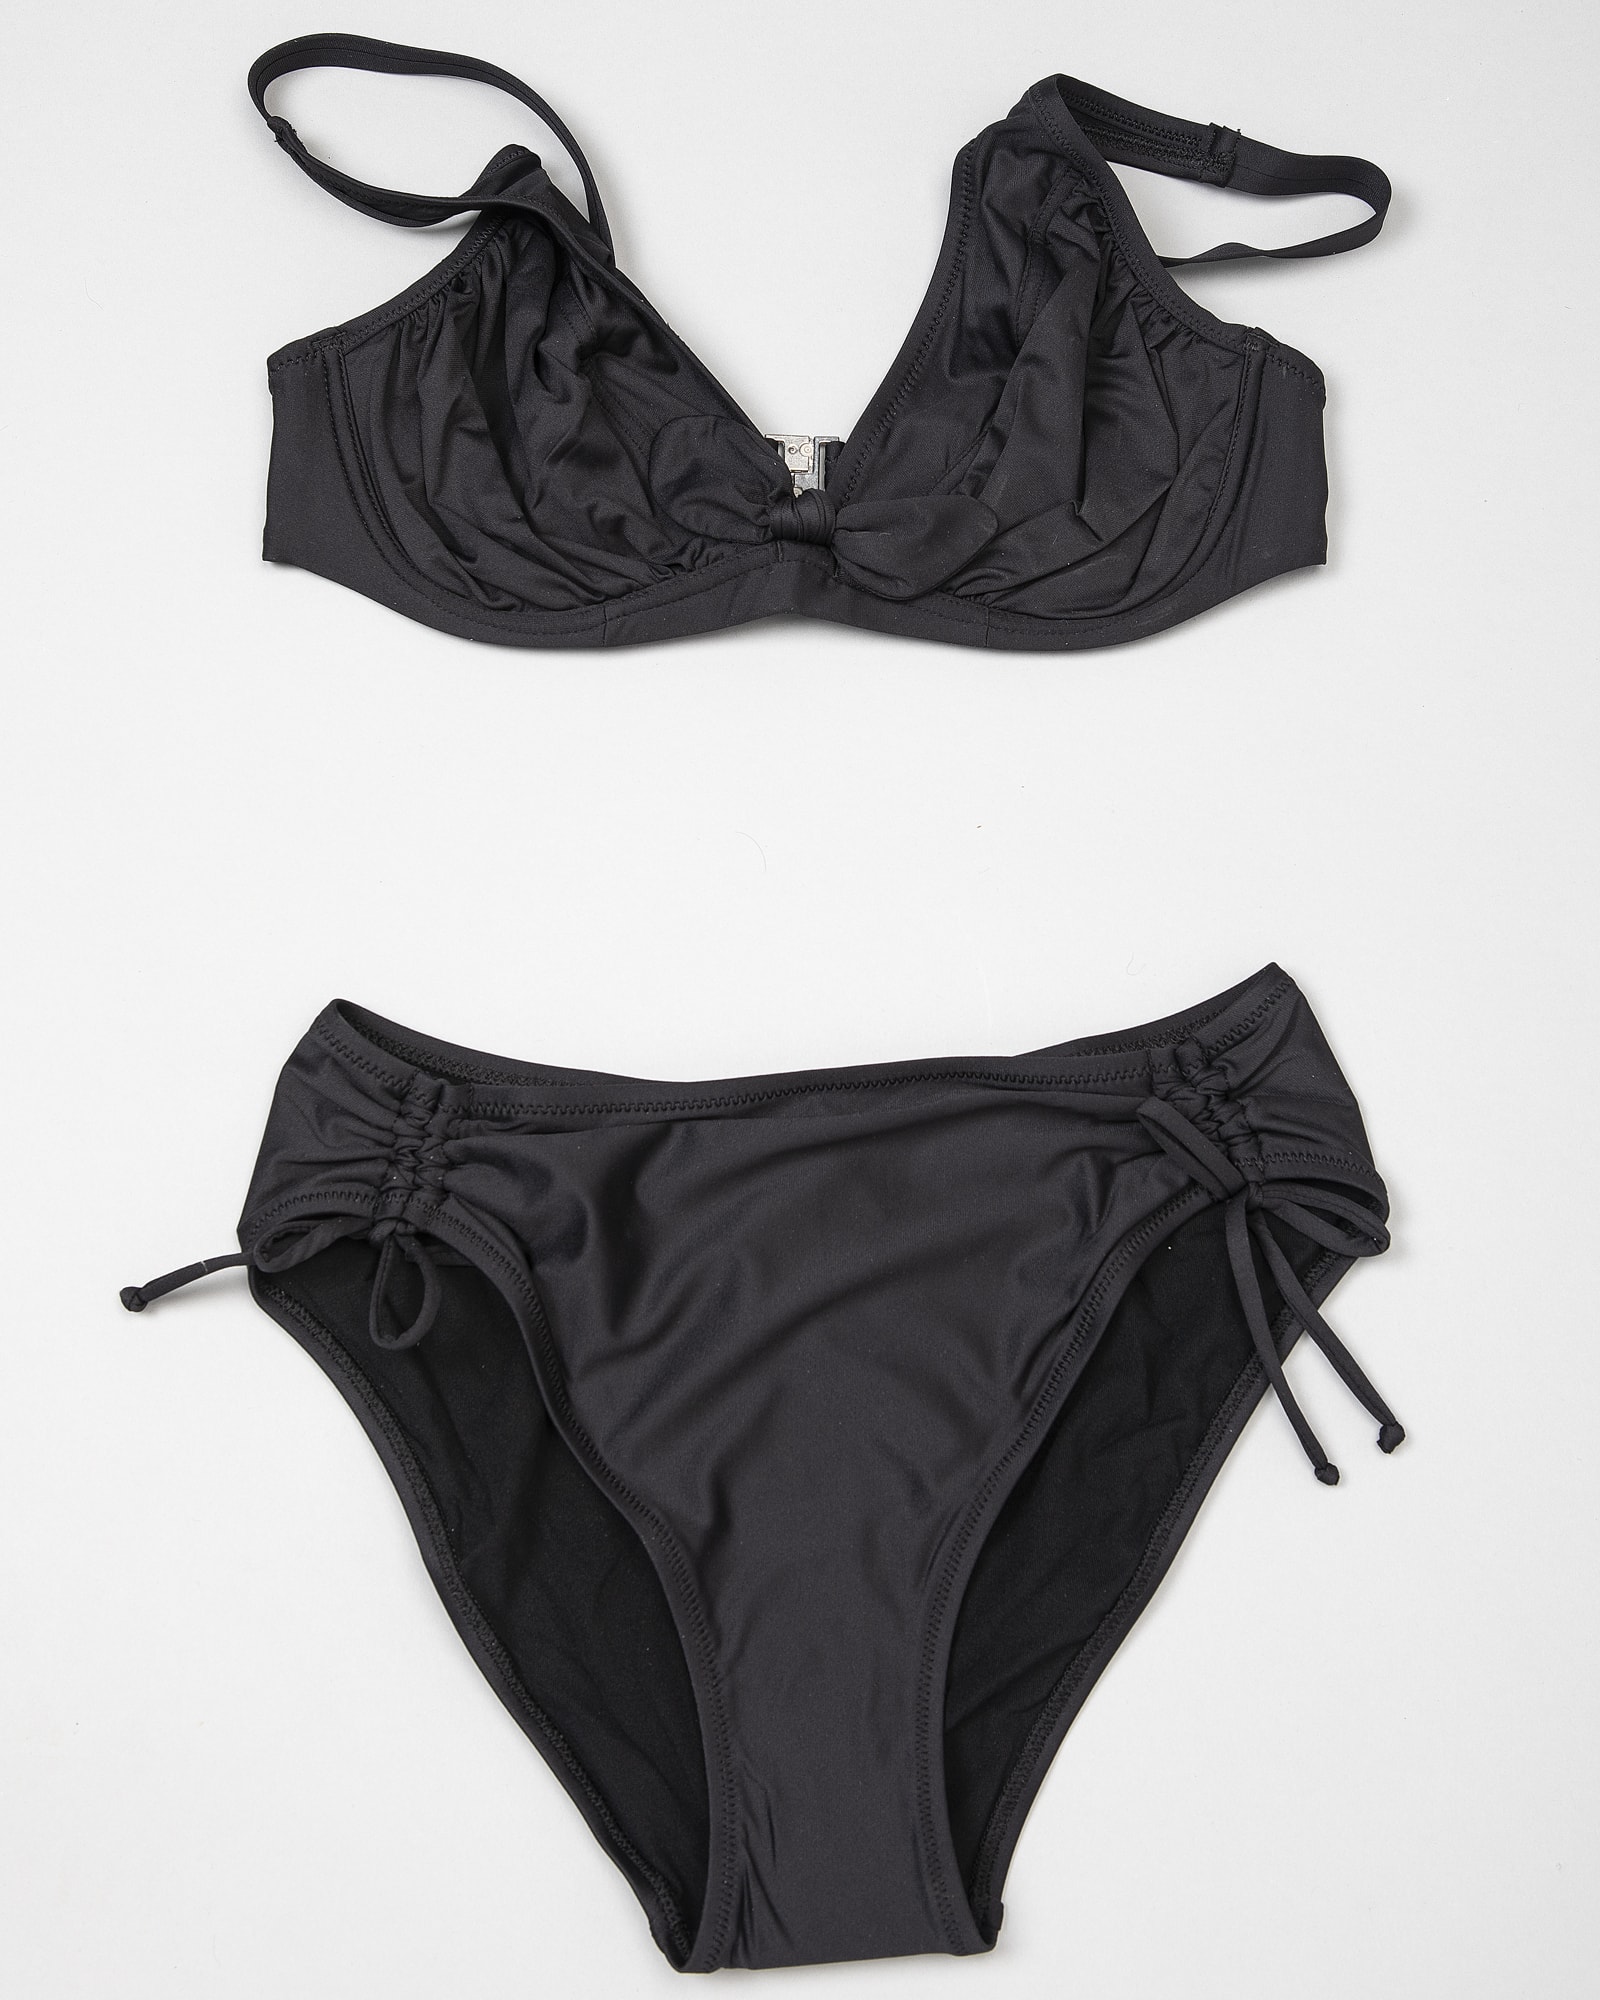 Antigel L'estivale Chic Bikini Top fba3216 and Bottom fba0616 Black 0005